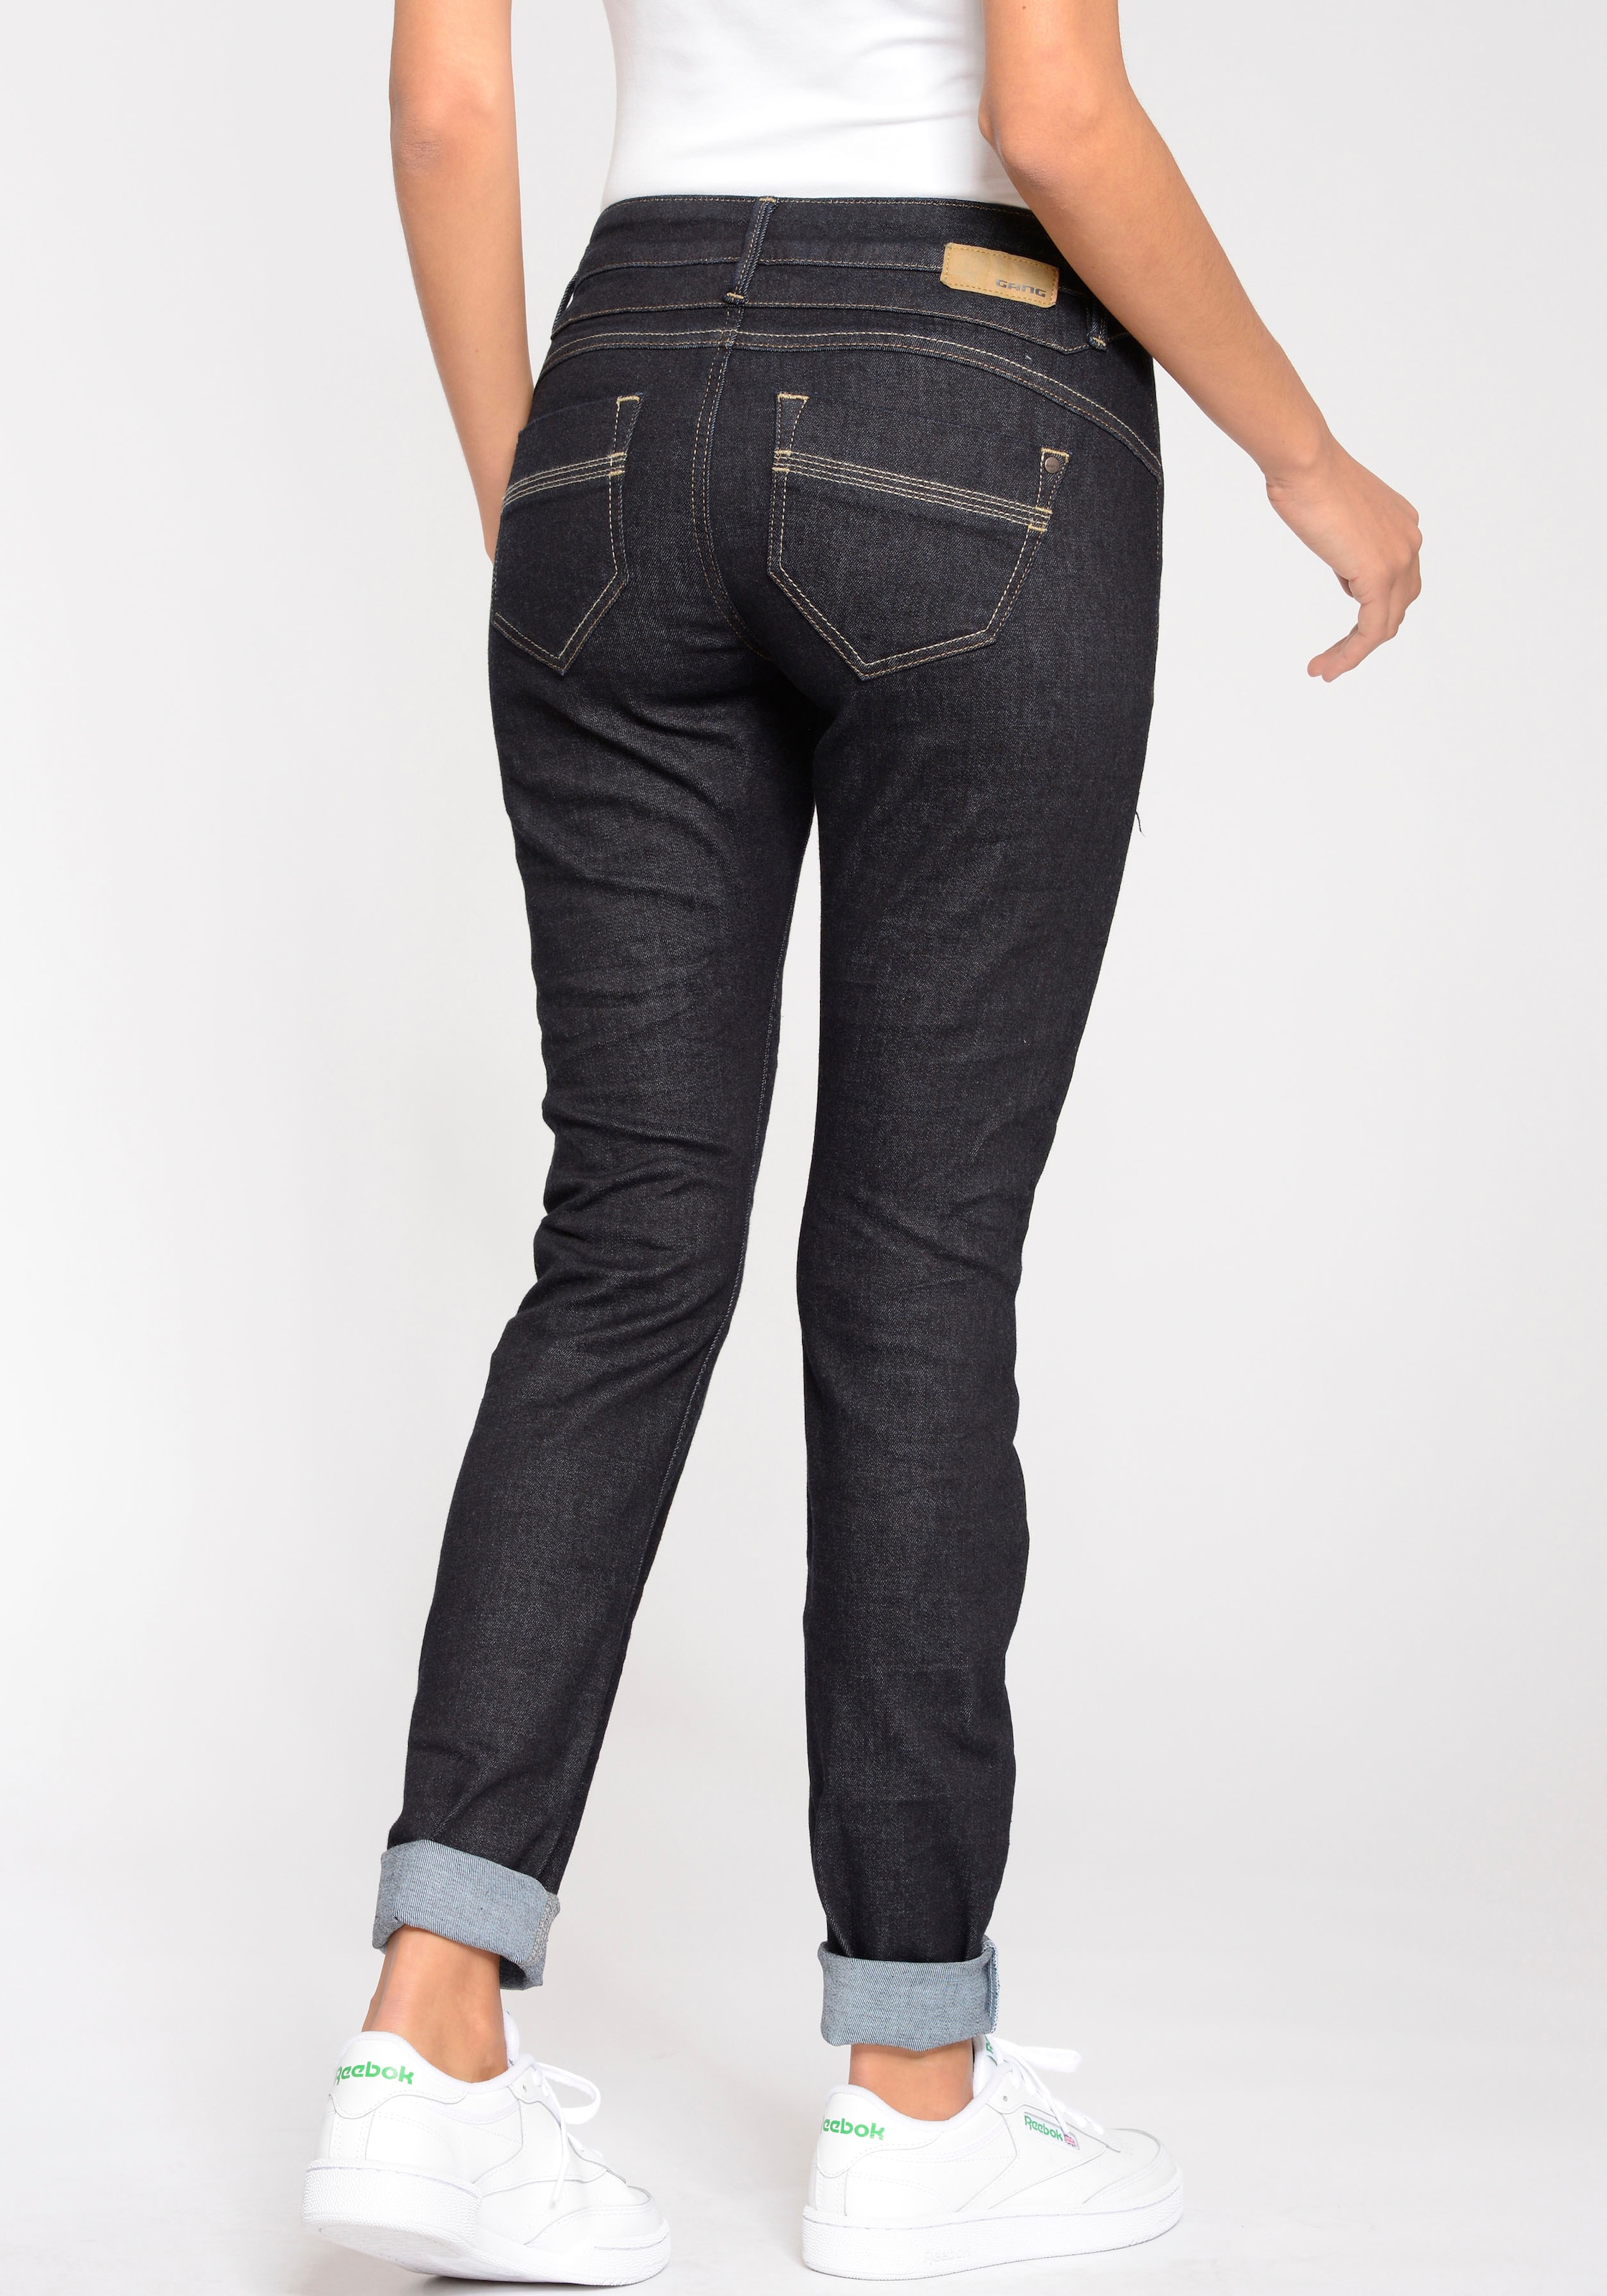 »94 ♕ versandkostenfrei bestellen Skinny-fit-Jeans GANG Nele«